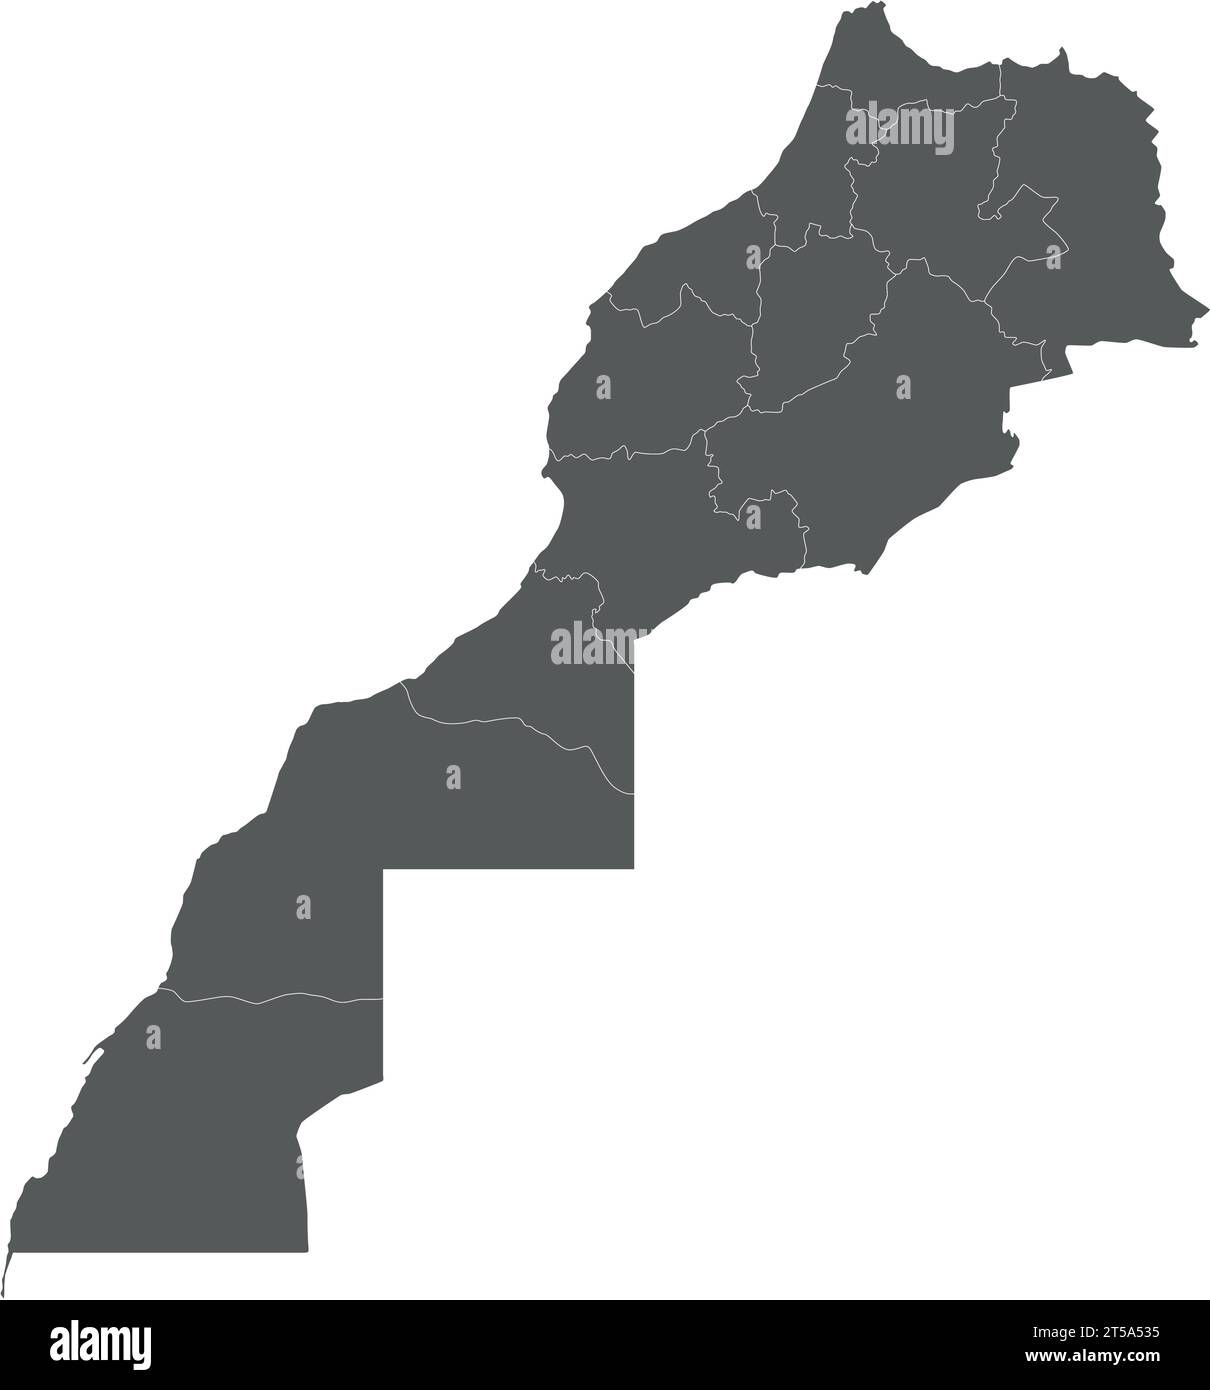 Leere Vektor-Karte von Marokko mit Regionen und Verwaltungsbereichen. Bearbeitbare und klar beschriftete Ebenen. Stock Vektor